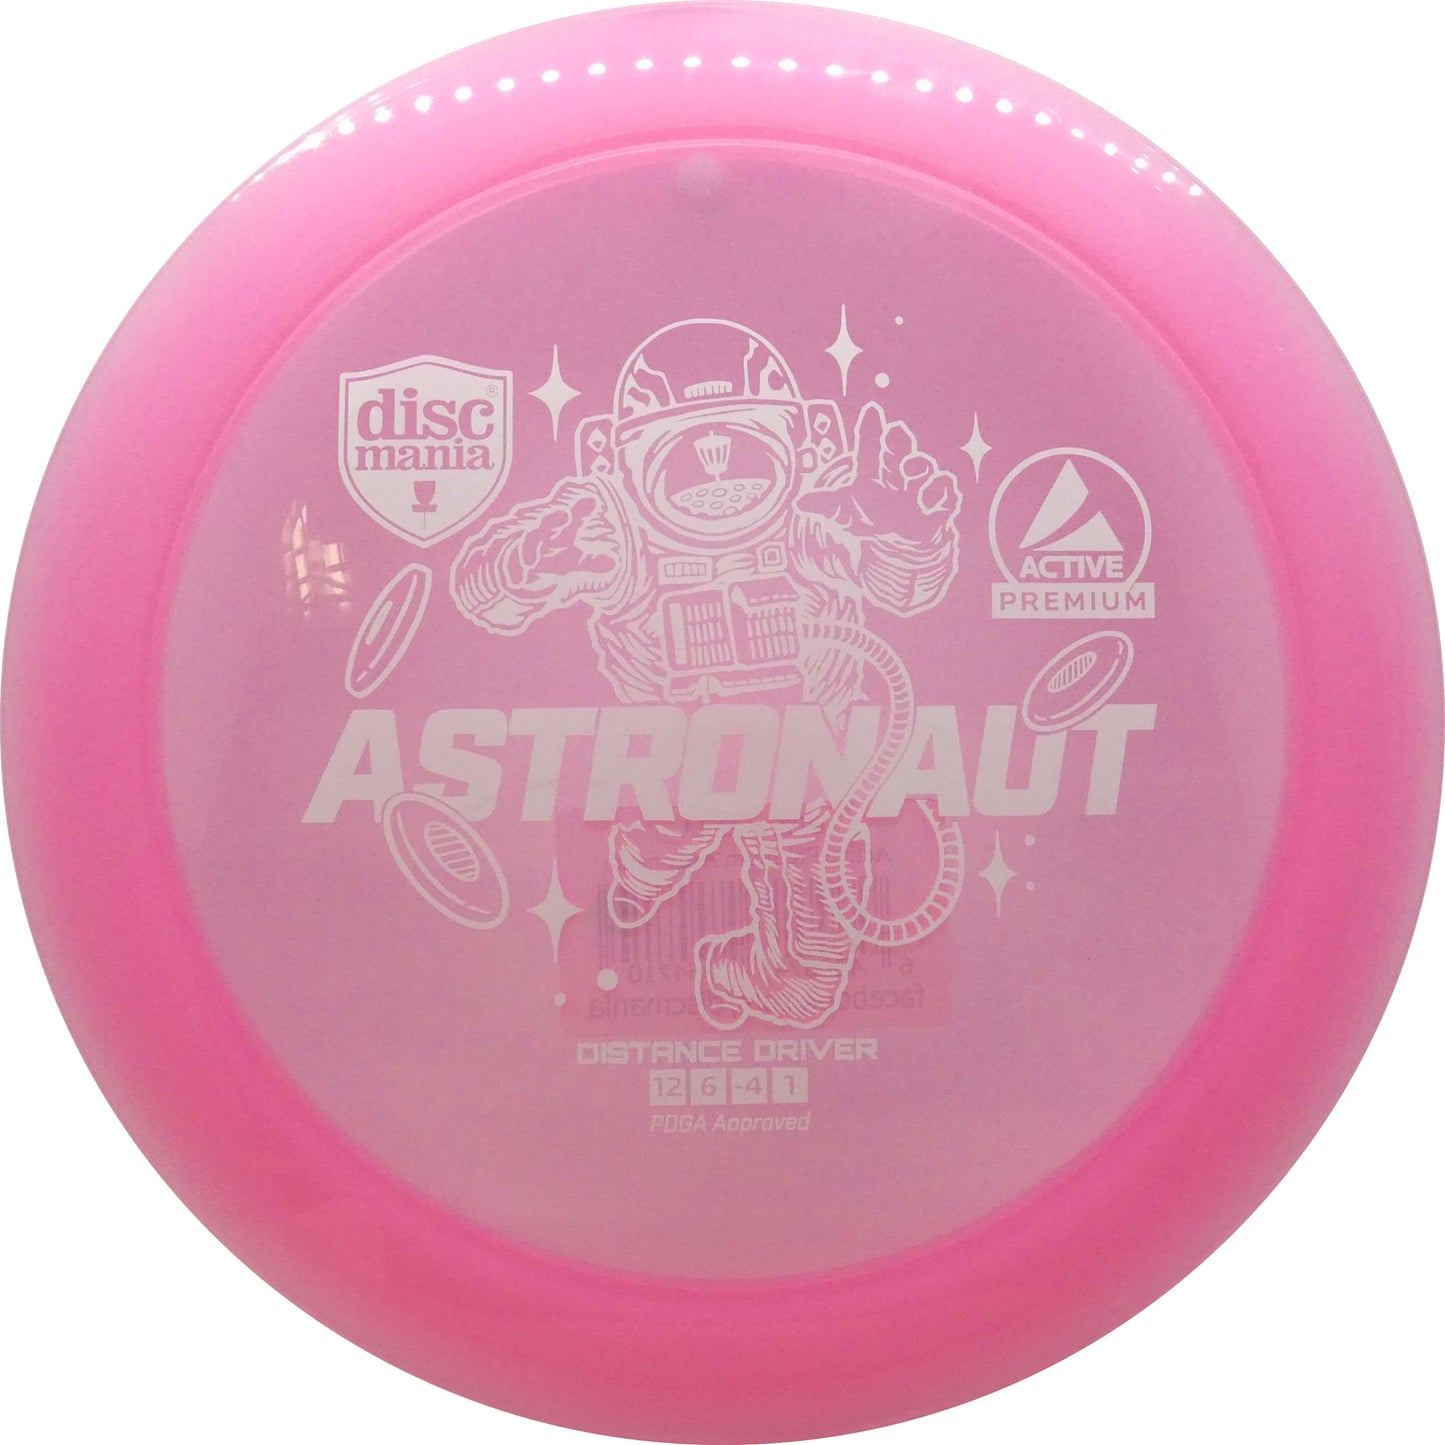 Active Premium Astronaut 165-175g